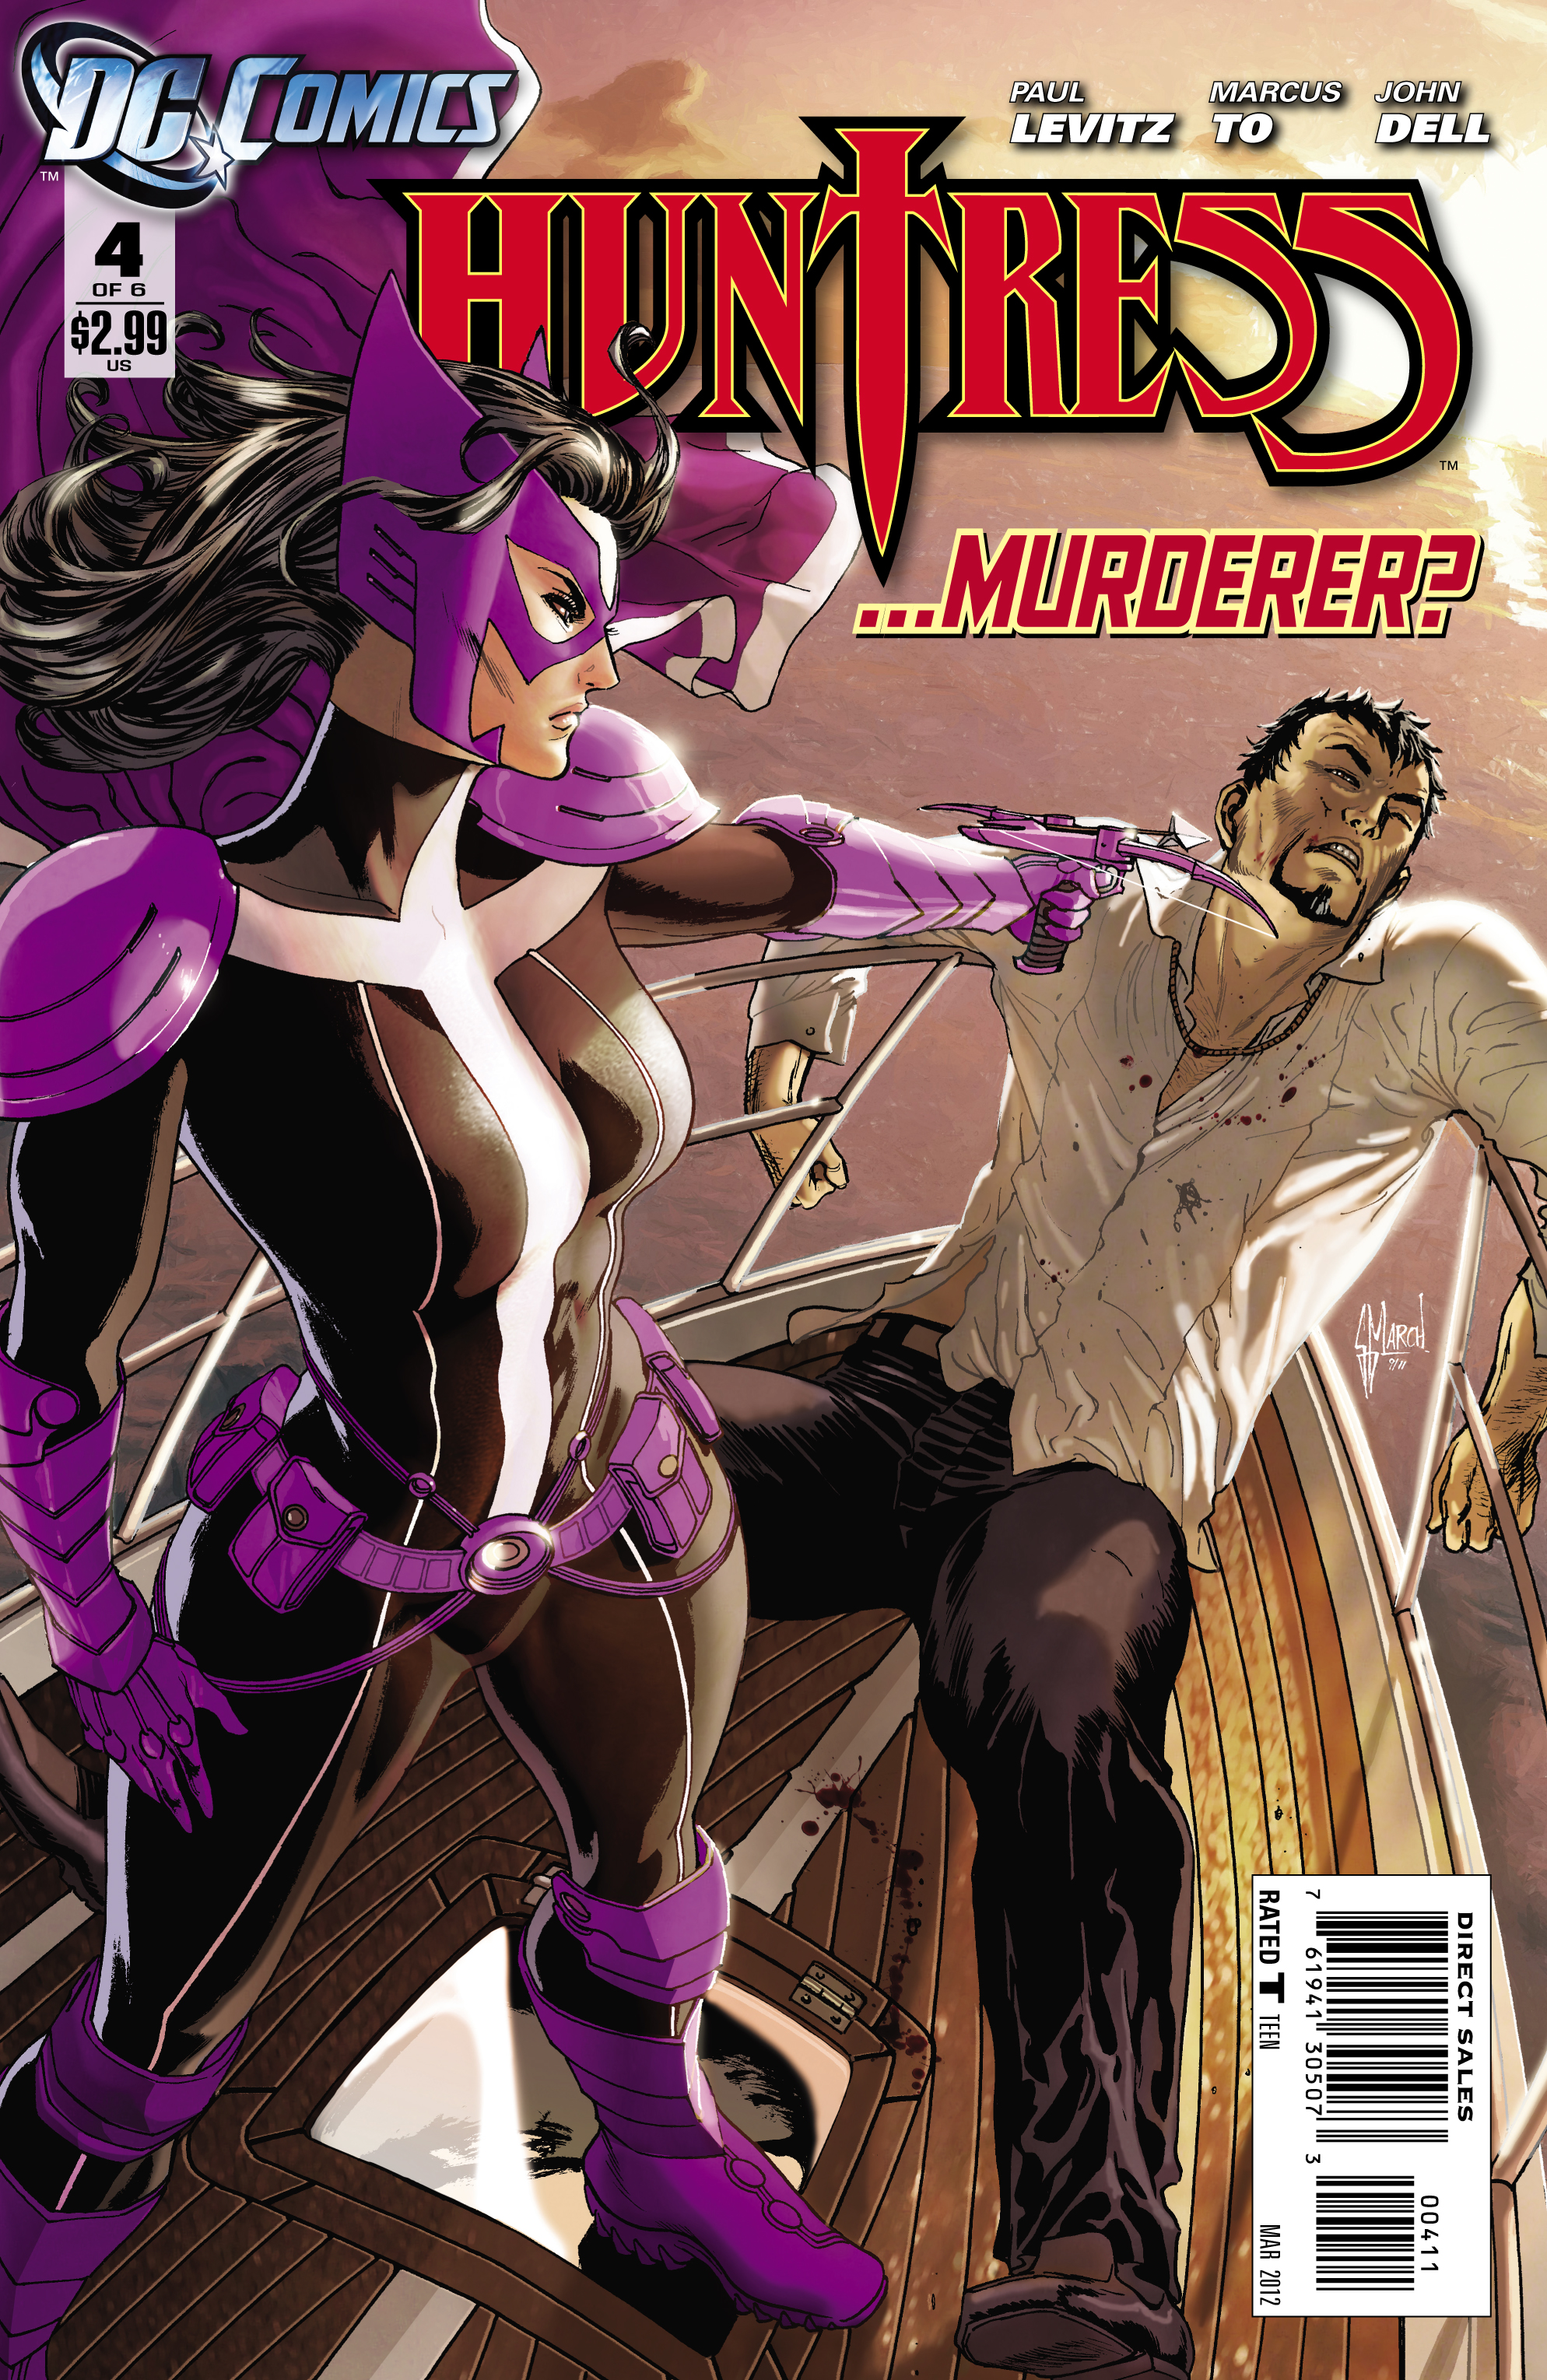 Huntress (Volume 3) Issue 4 | Batman Wiki | FANDOM powered by Wikia